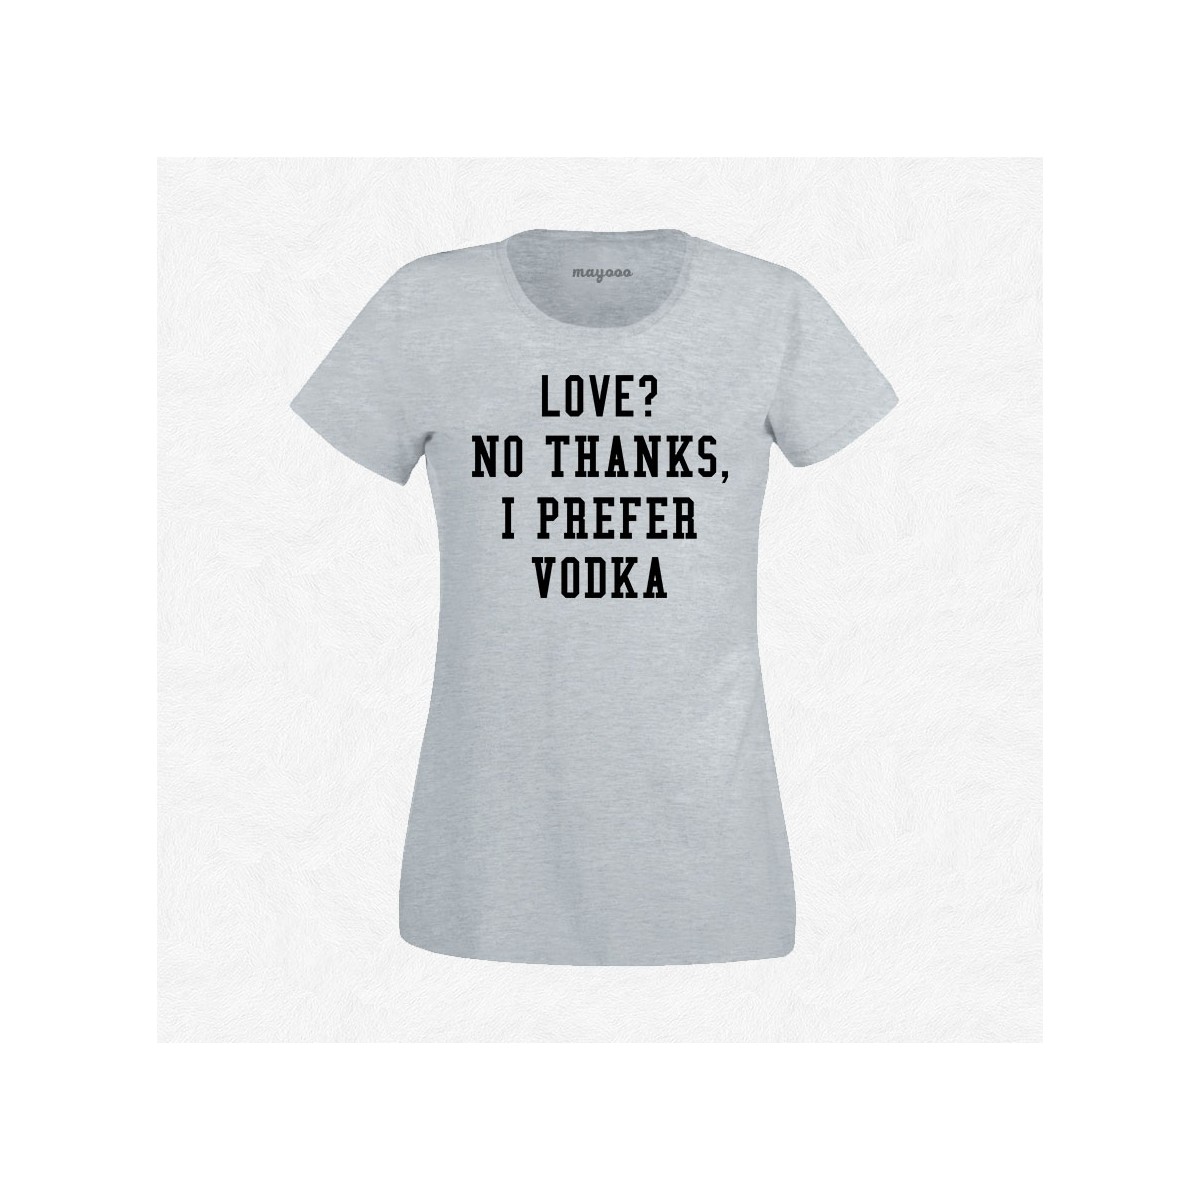 T-shirt I prefer vodka